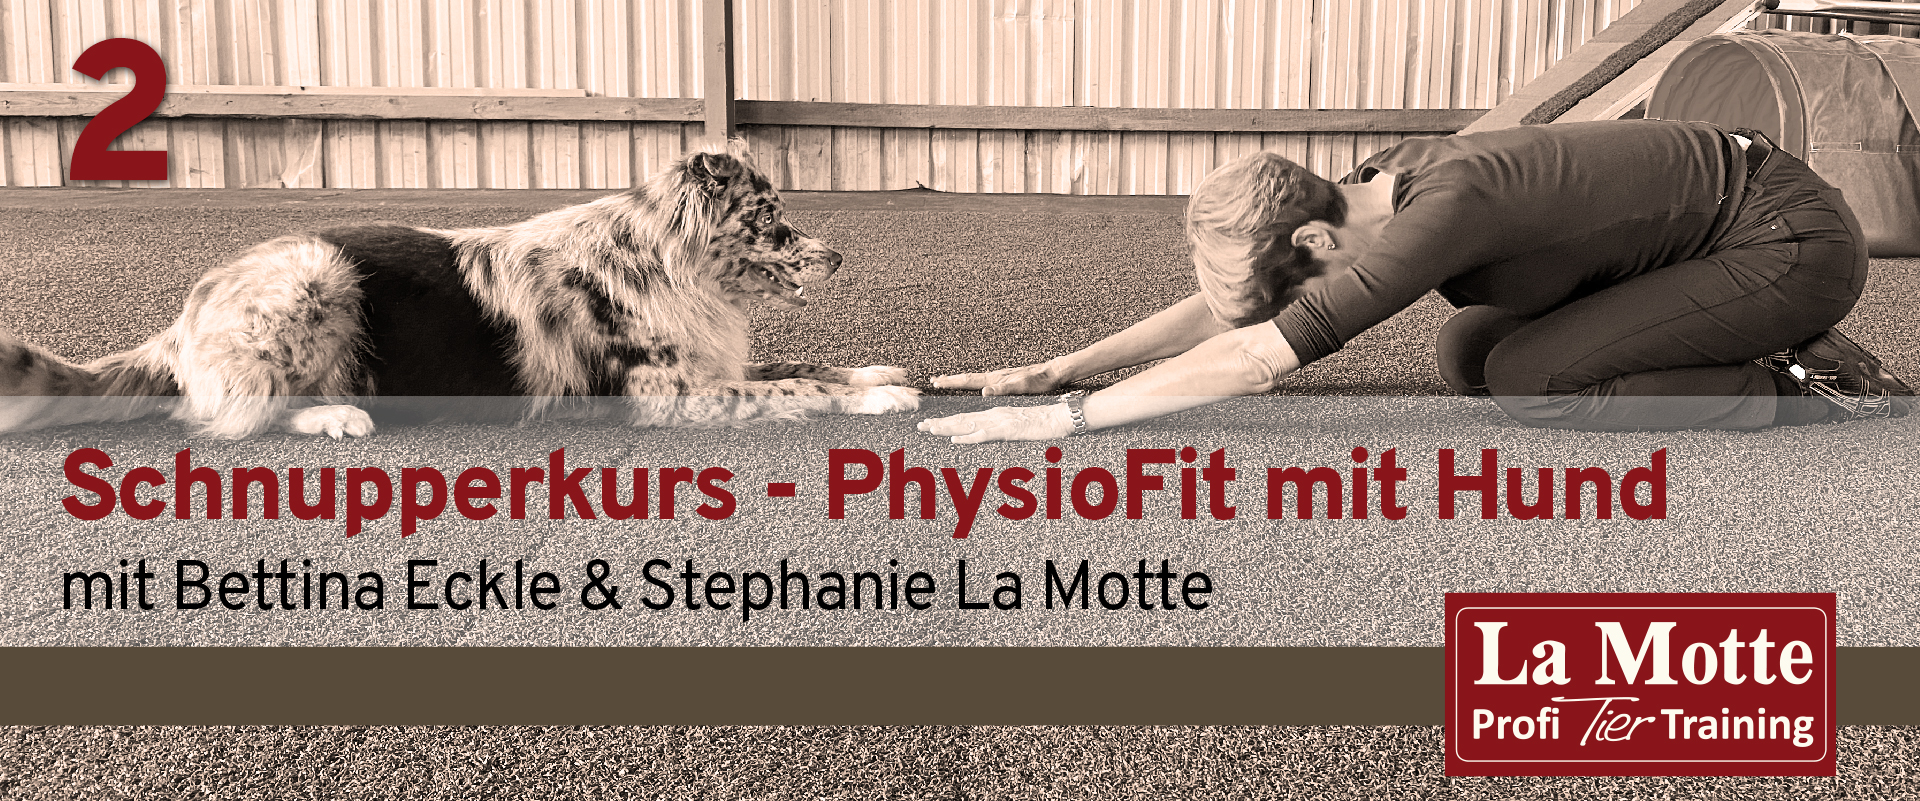 Schnupperkurs - PhysioFit mit Hund mit Bettina Eckle & Stephanie La Motte - Teil 2